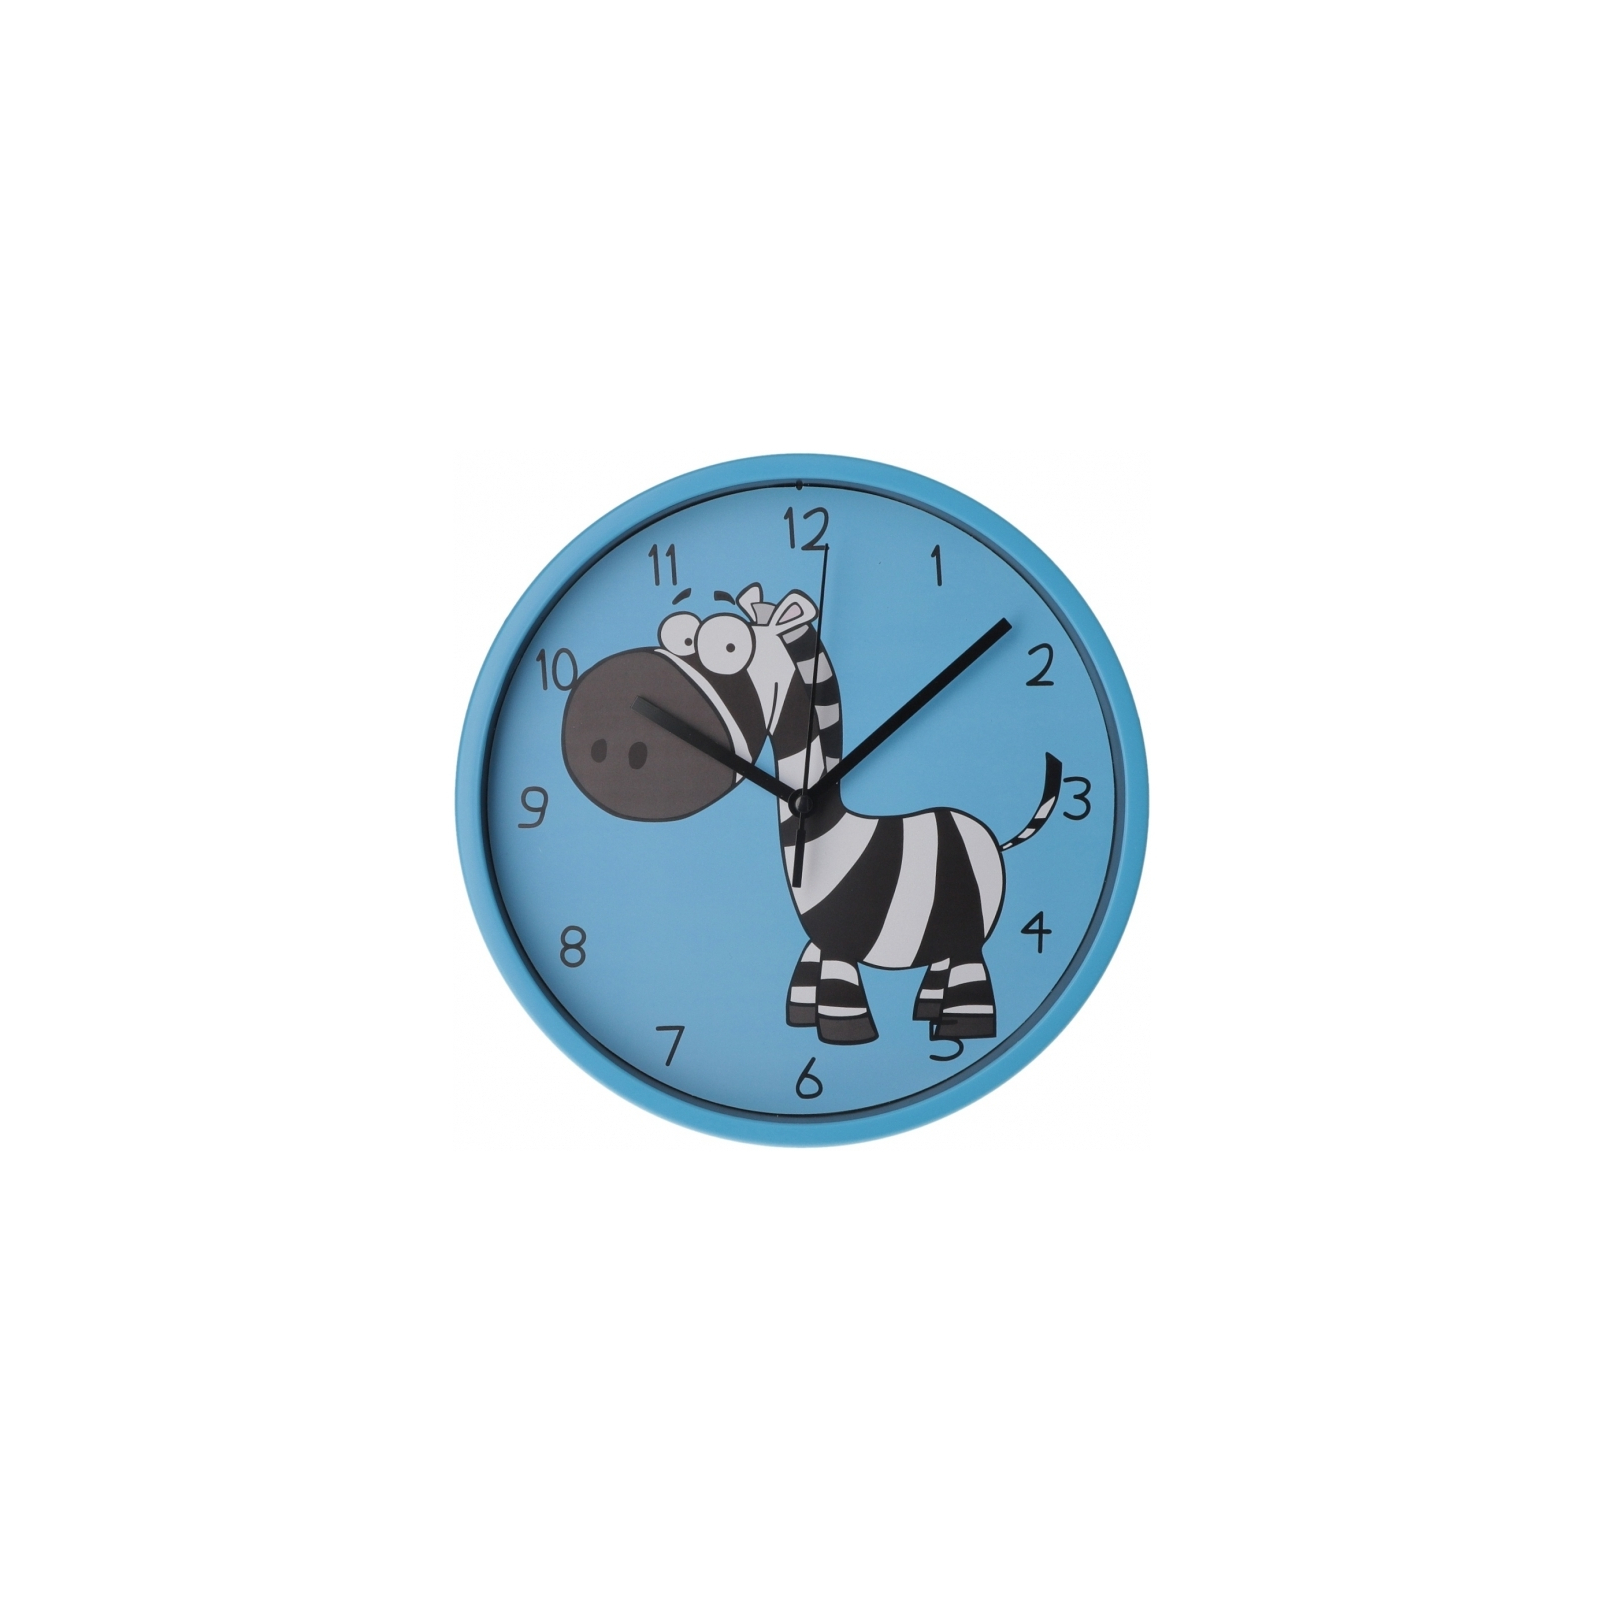 Настенные часы Optima Little Zebra пластиковый, голубой (O52106)